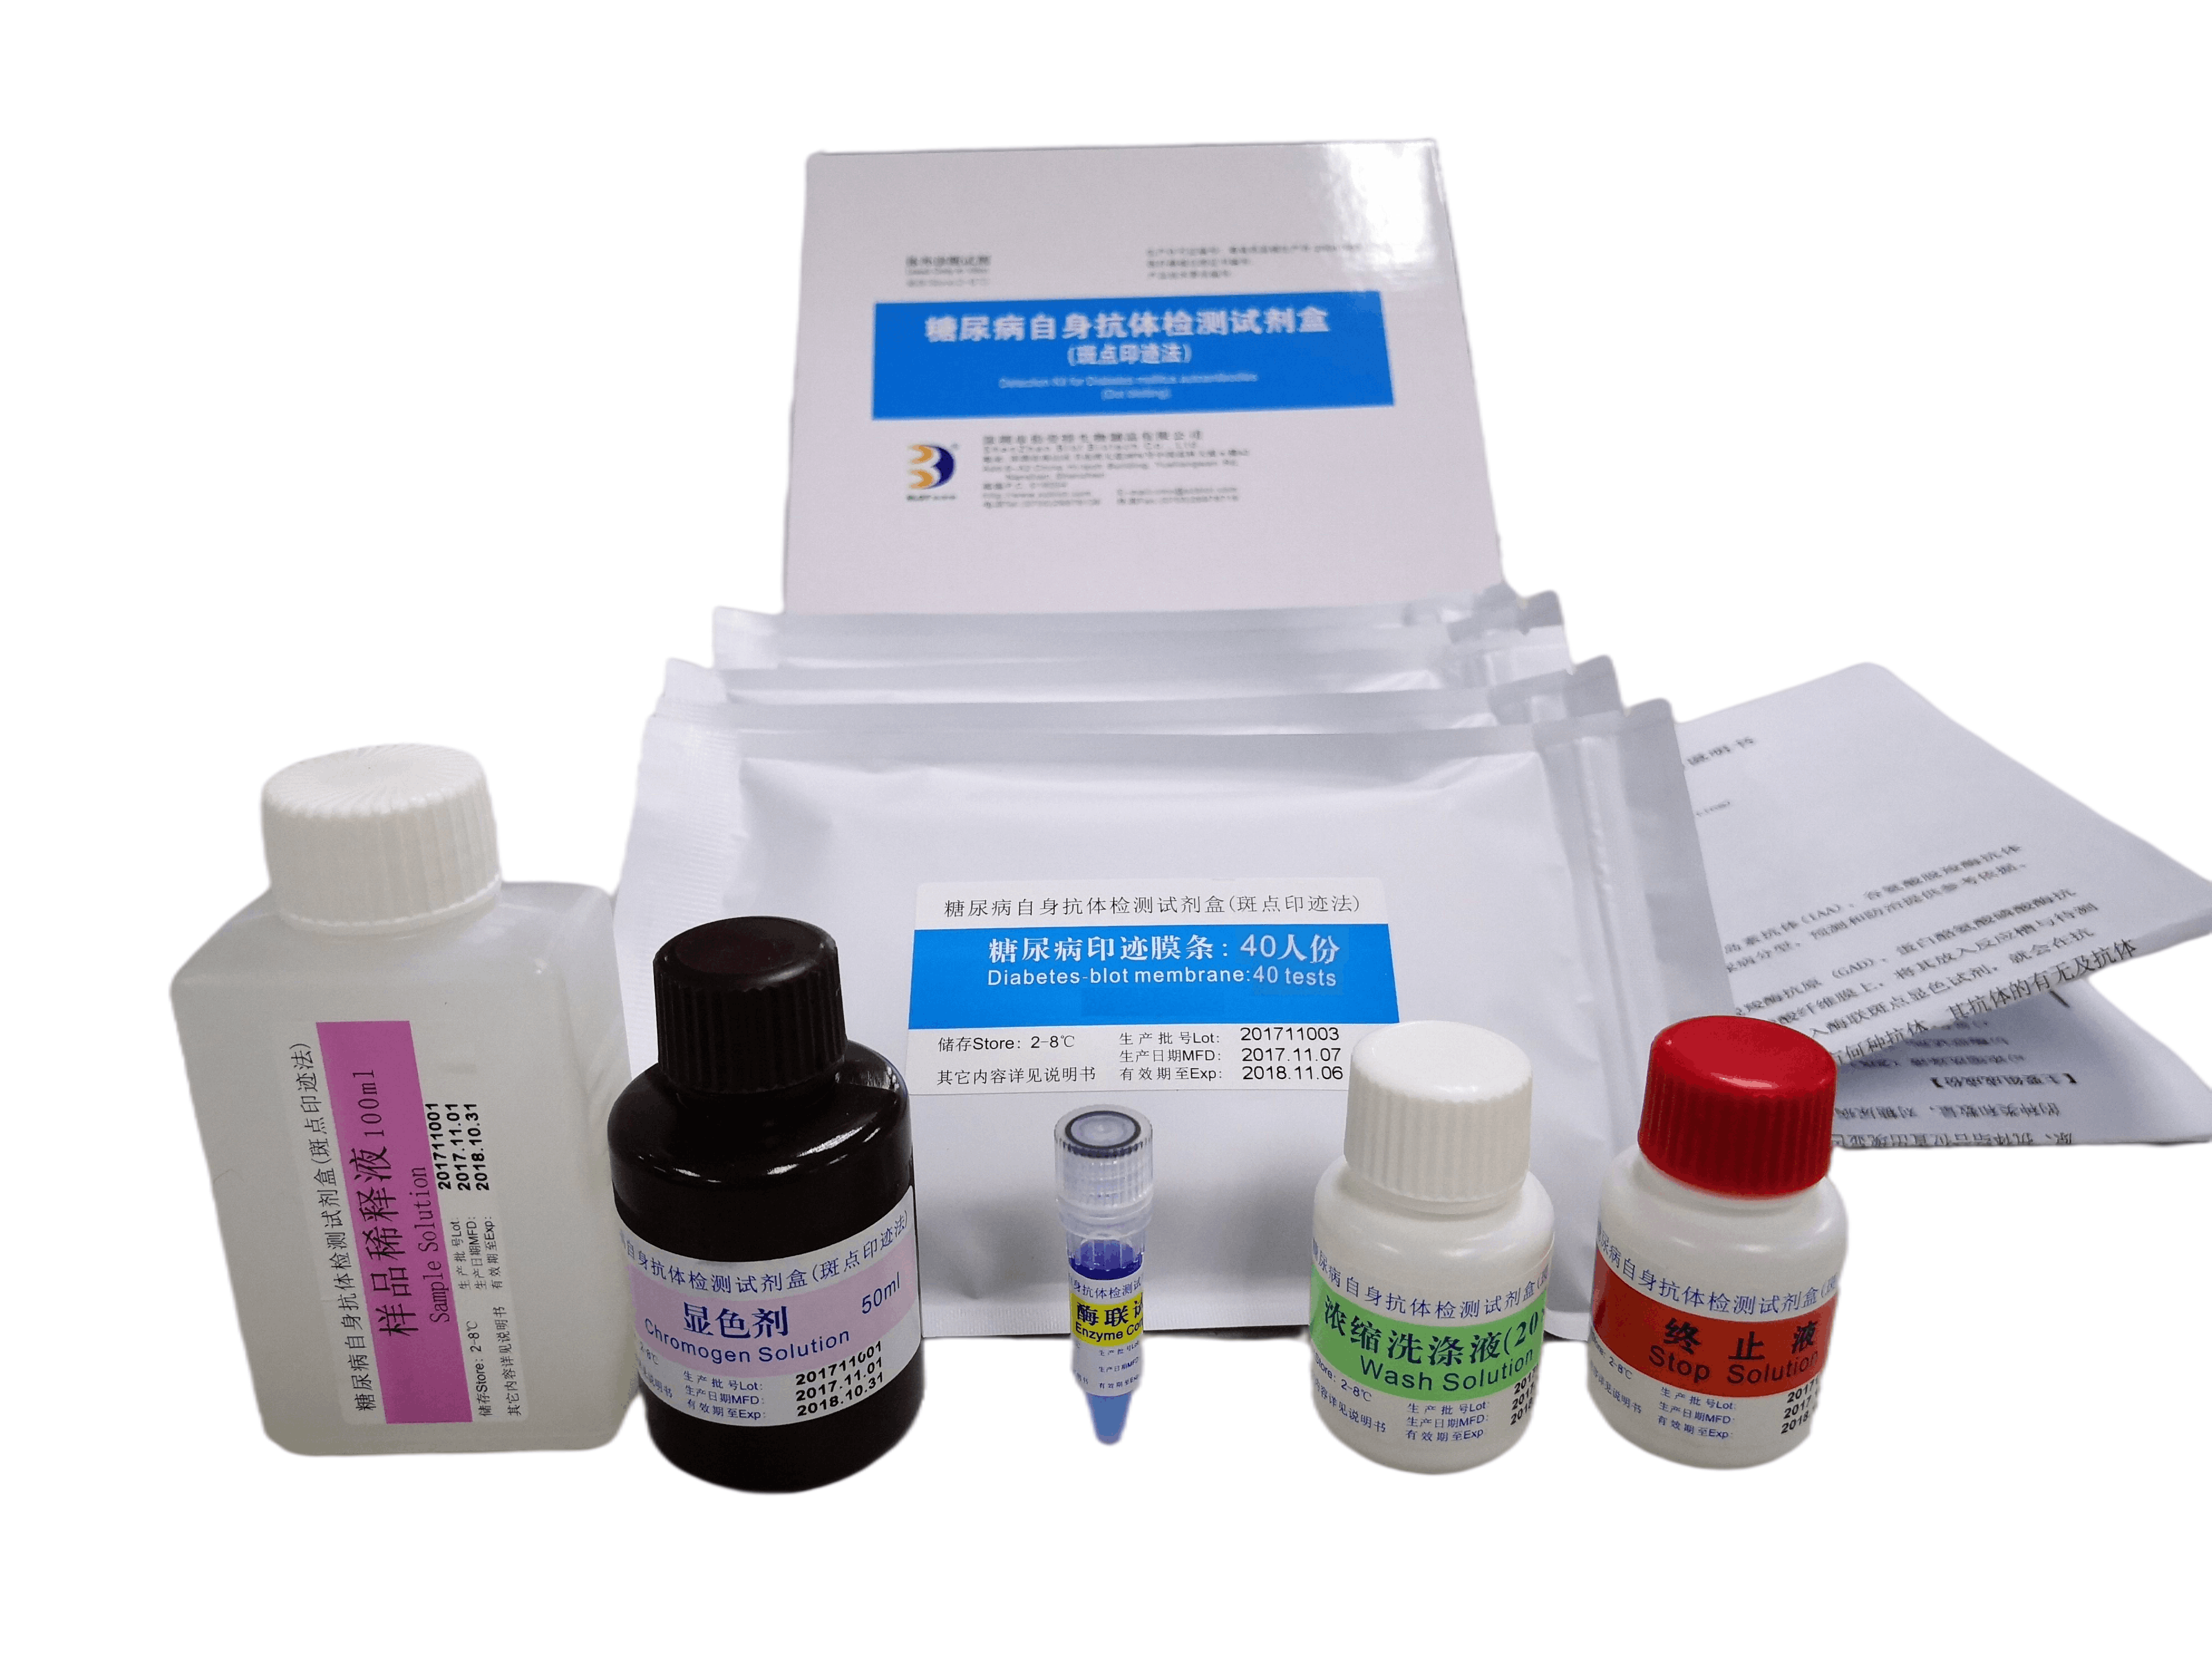 糖尿病自身抗体检测试剂盒（斑点印迹法）